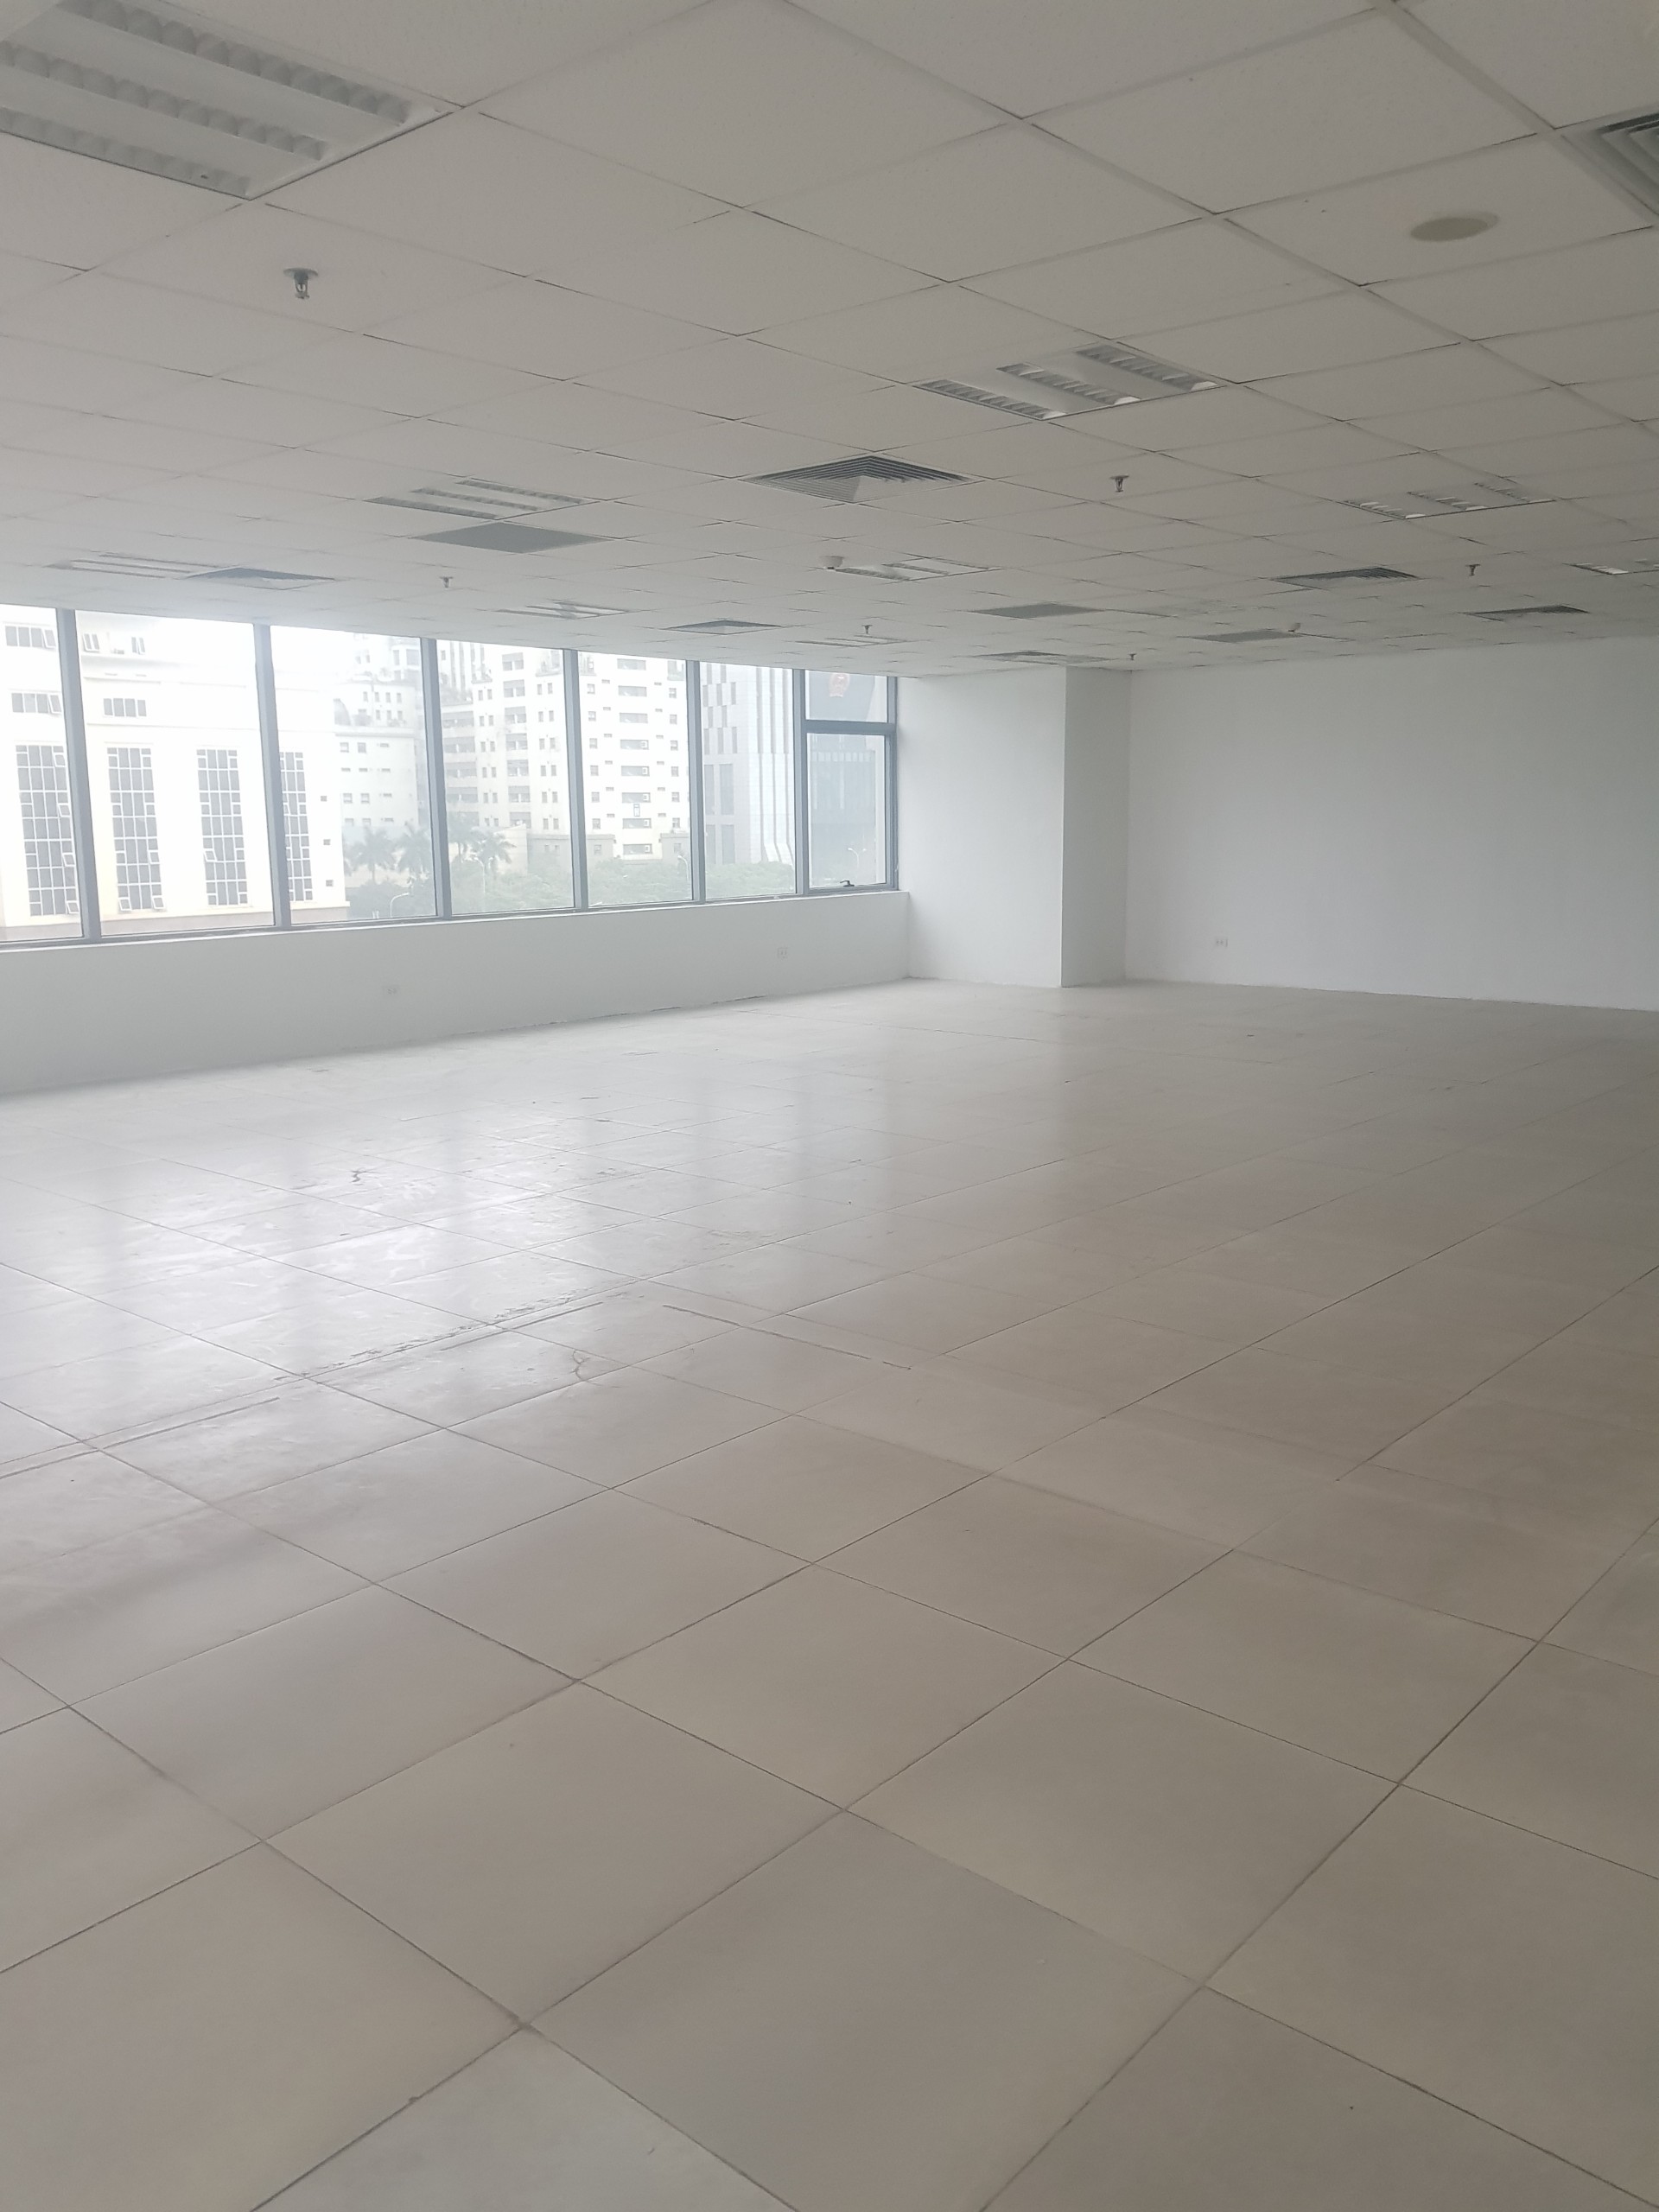 Cho thuê sàn vp diện tích linh hoạt từ 40-200m tại tòa nhà Audi số 8 Phạm Hùng giá siêu rẻ, đẹp Lh 0989790498 2